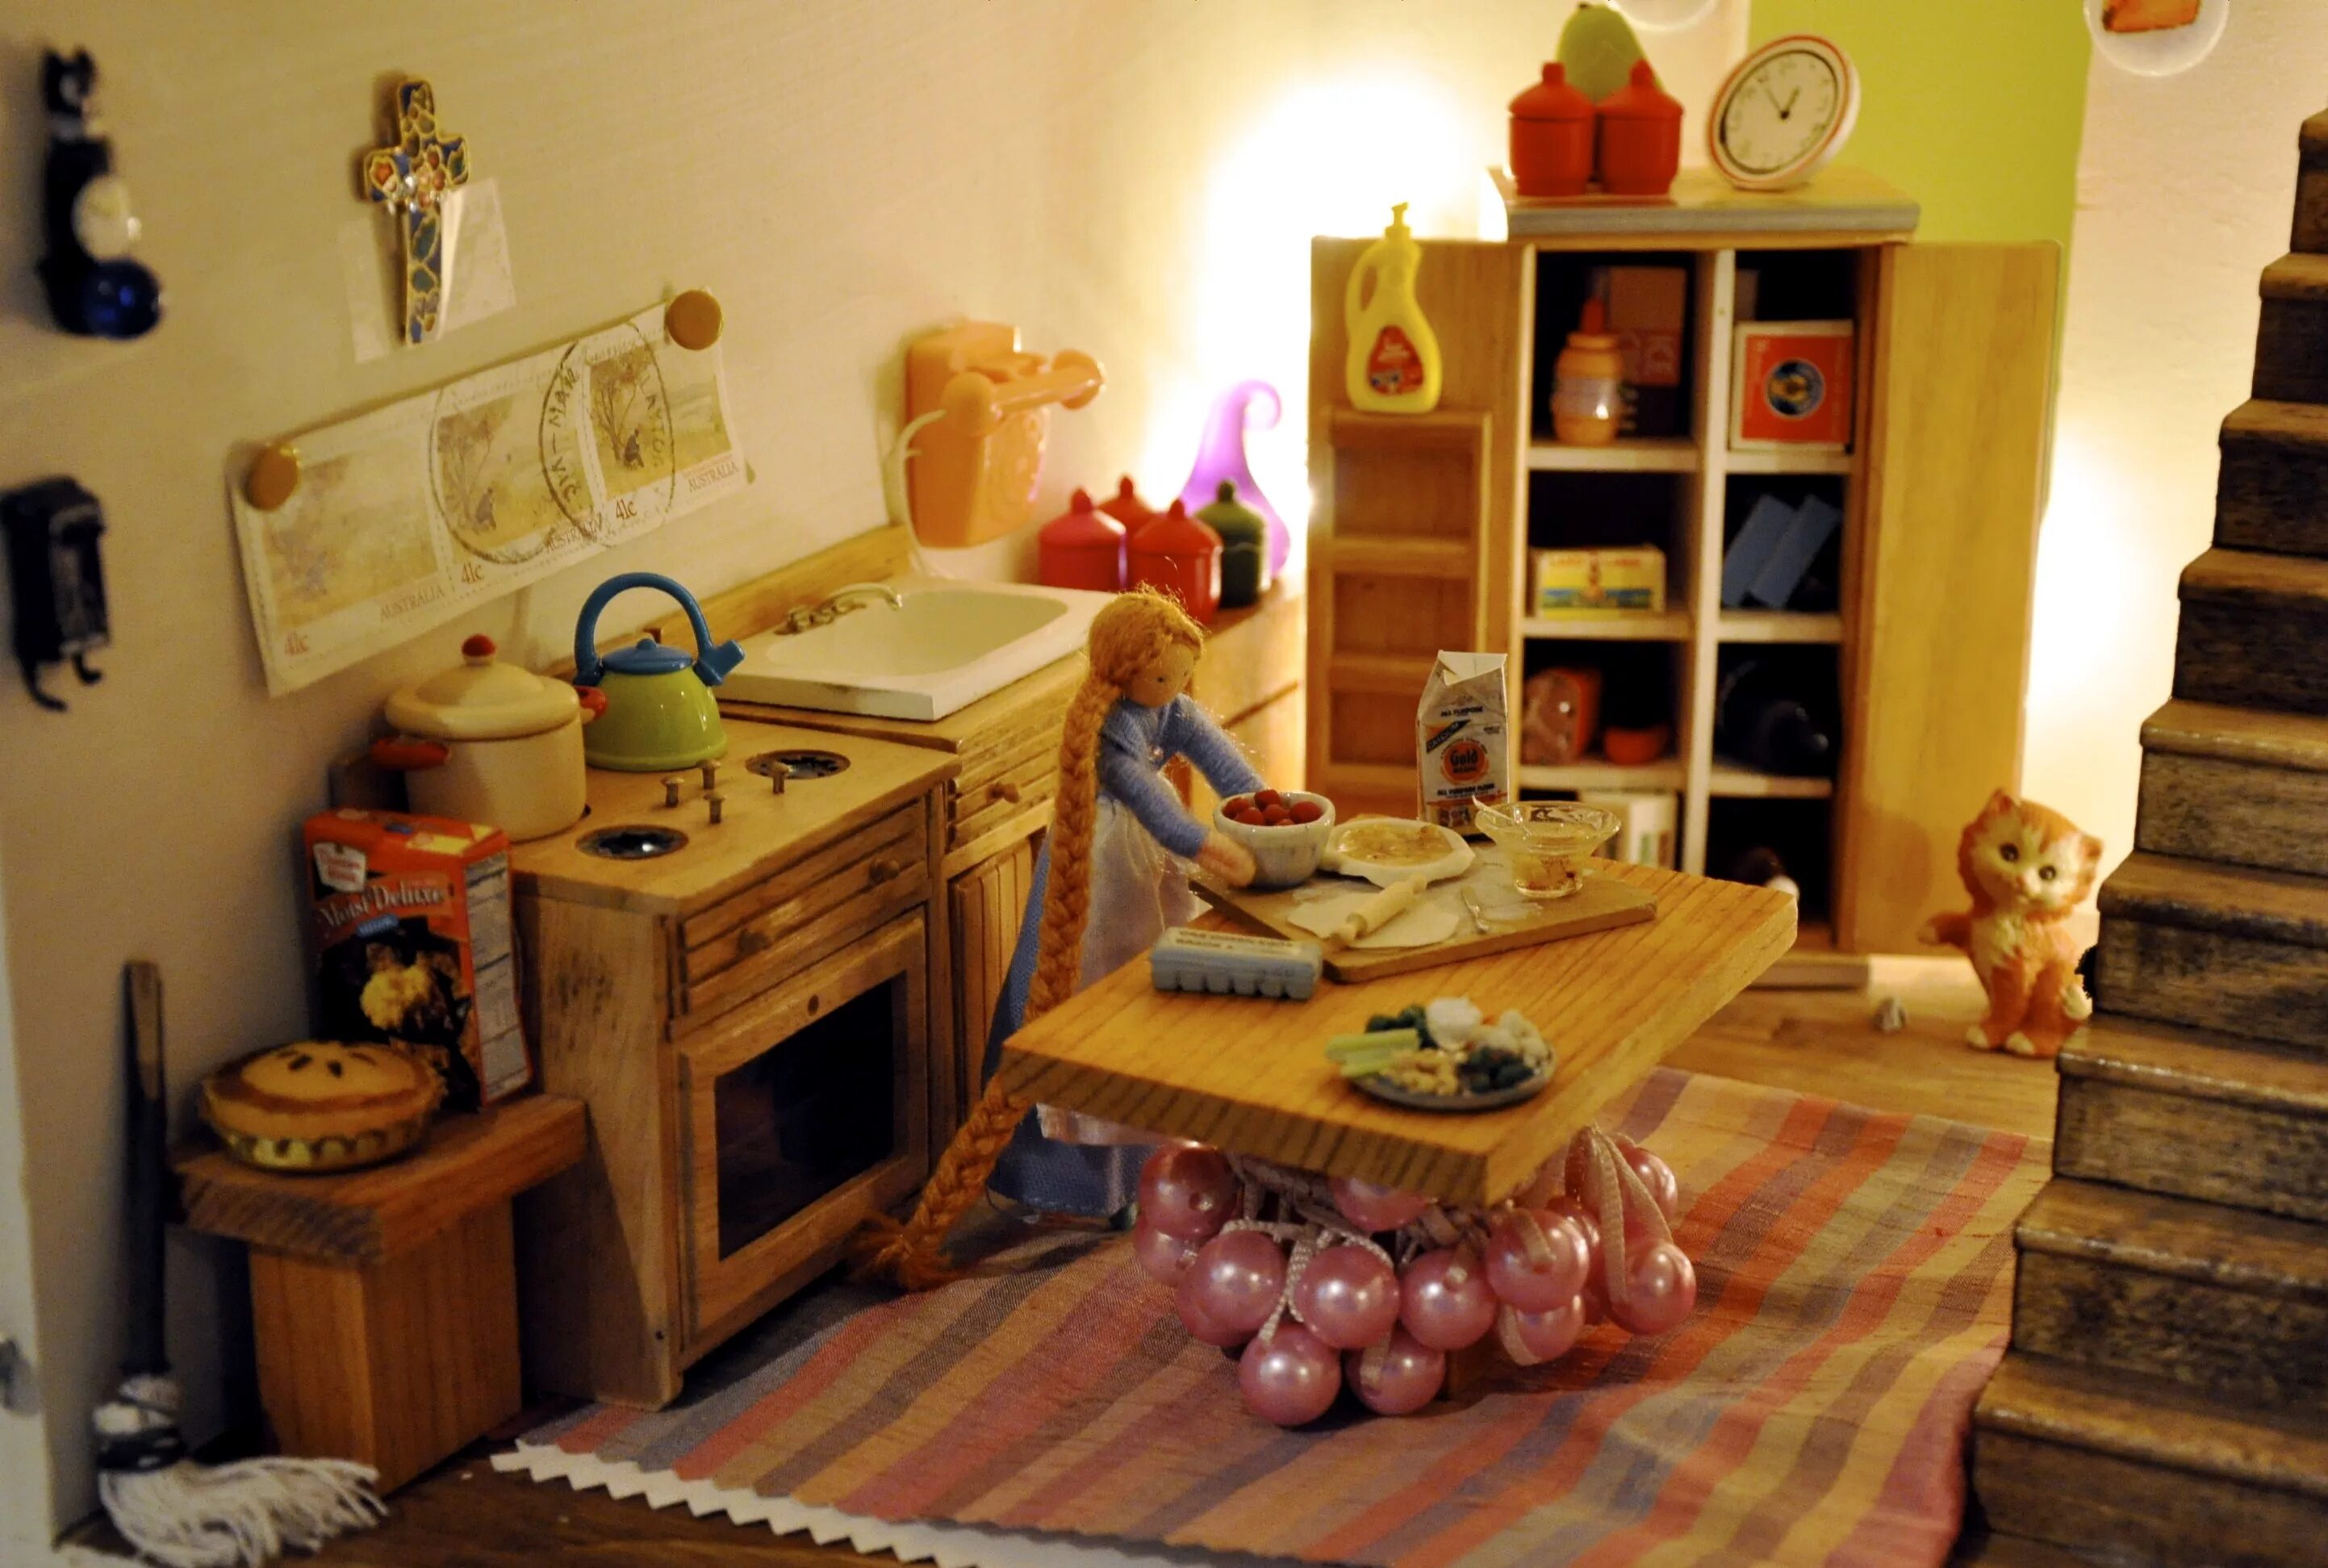 Той хаус. Обои для игрушечного домика. Обои в кукольный дом. Обои для кукольного домика кухня. Кукольный домик посреди комнаты арт.